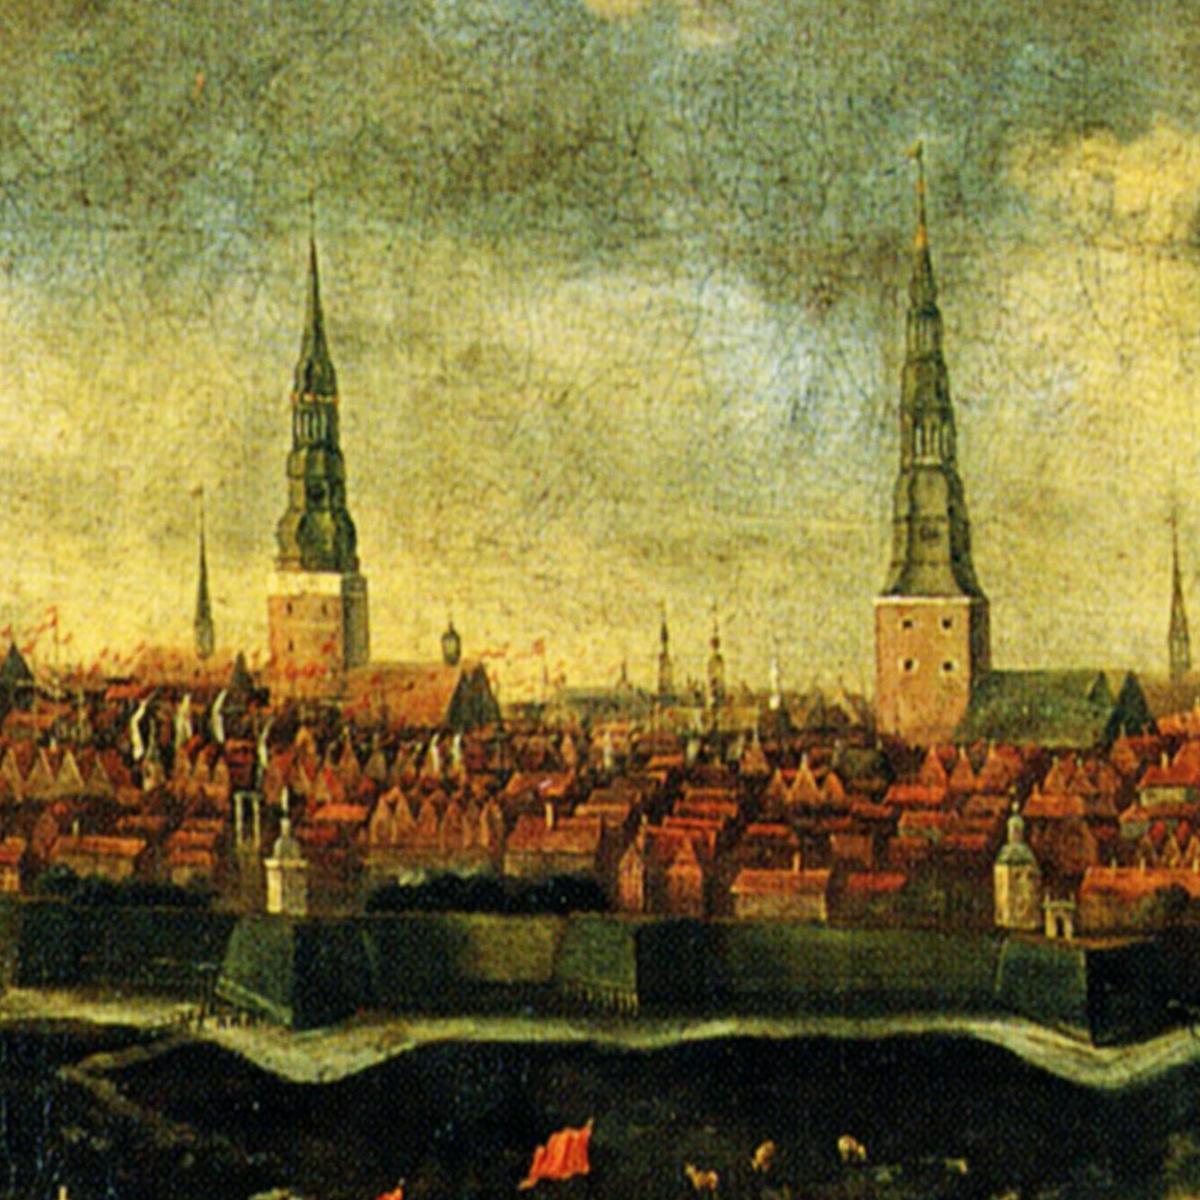 Historische Ansicht Hamburg um 1680